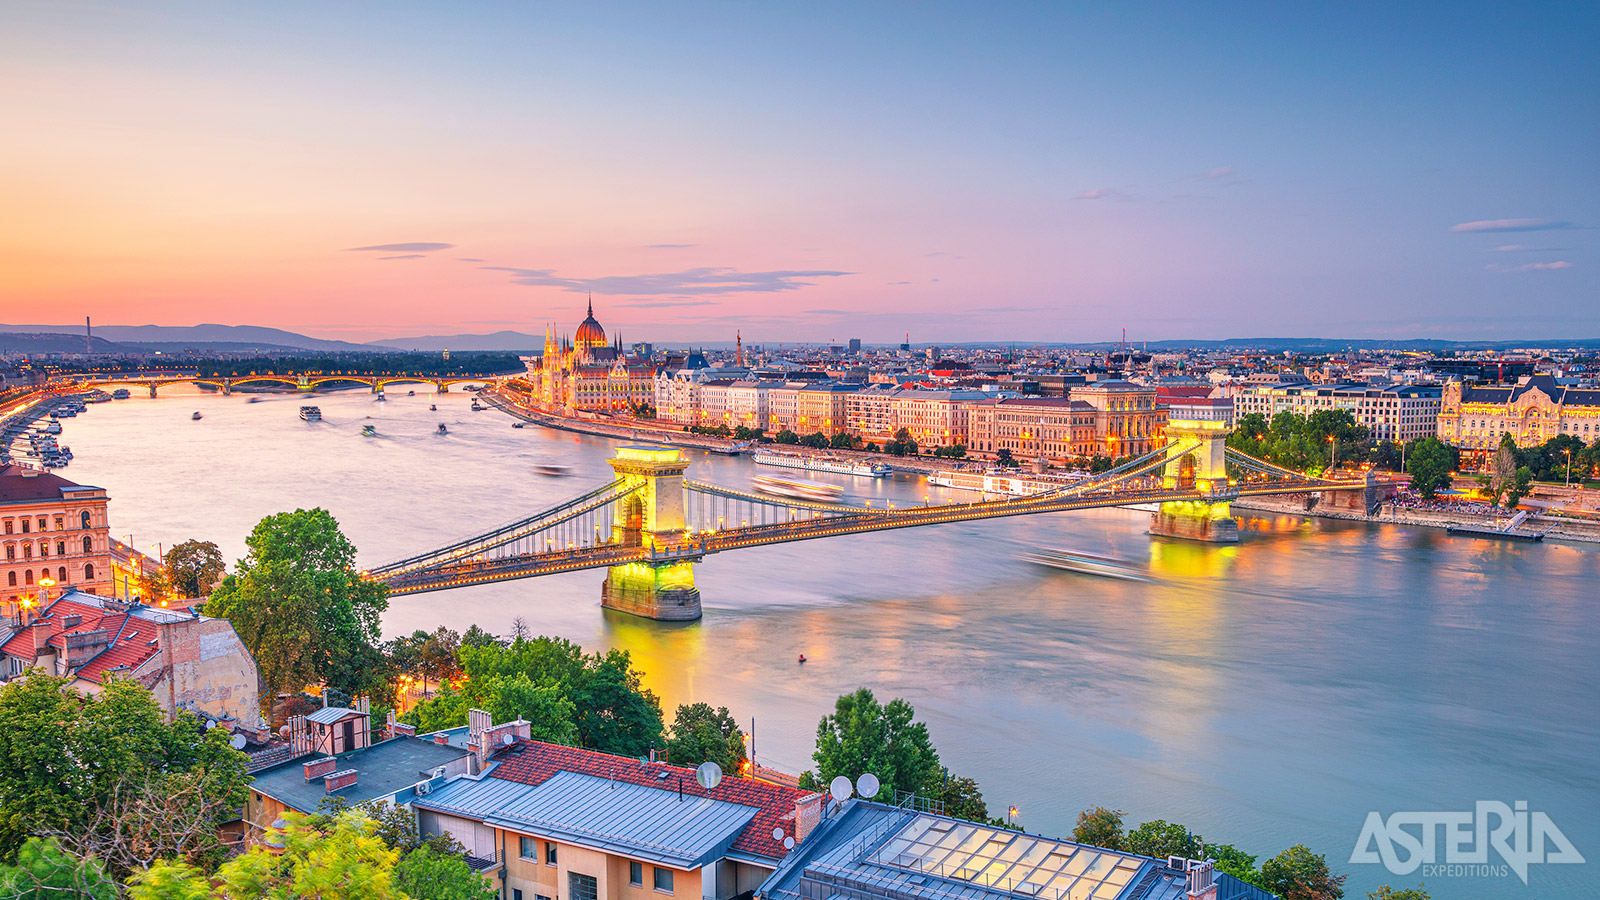 De majestueuze Donau stroomt tussen de 2 stadsdelen Buda en Pest door, vandaar de naam Budapest